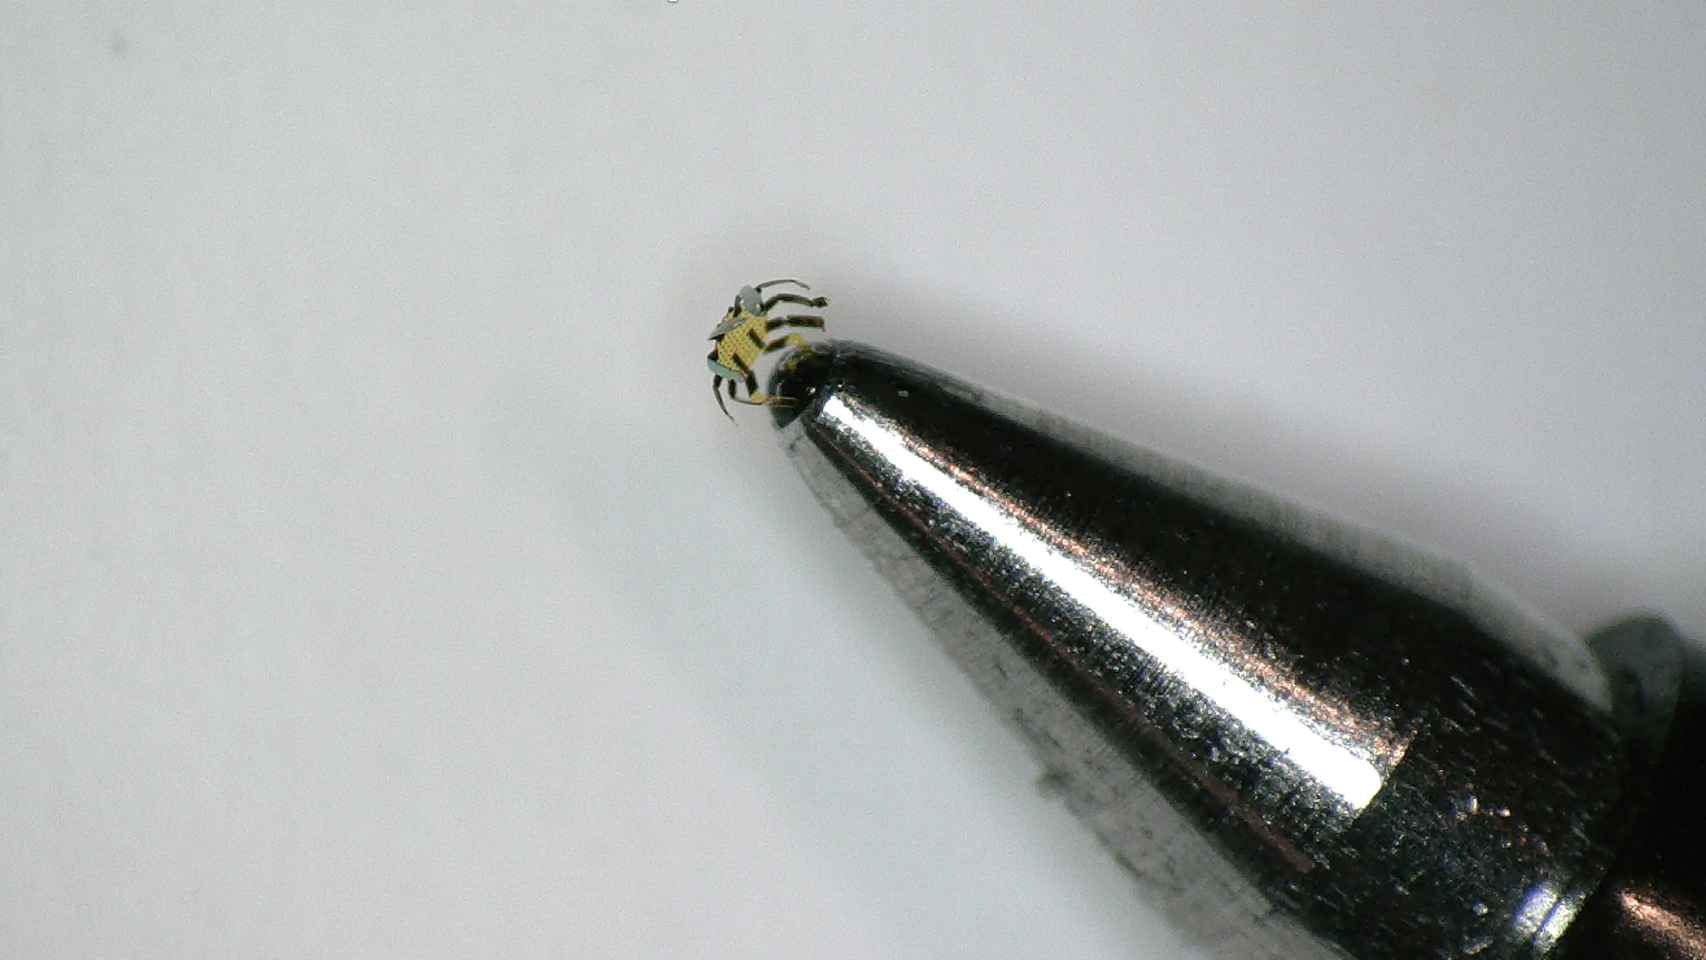 El microrobot al lado de la punta de un bolígrafo